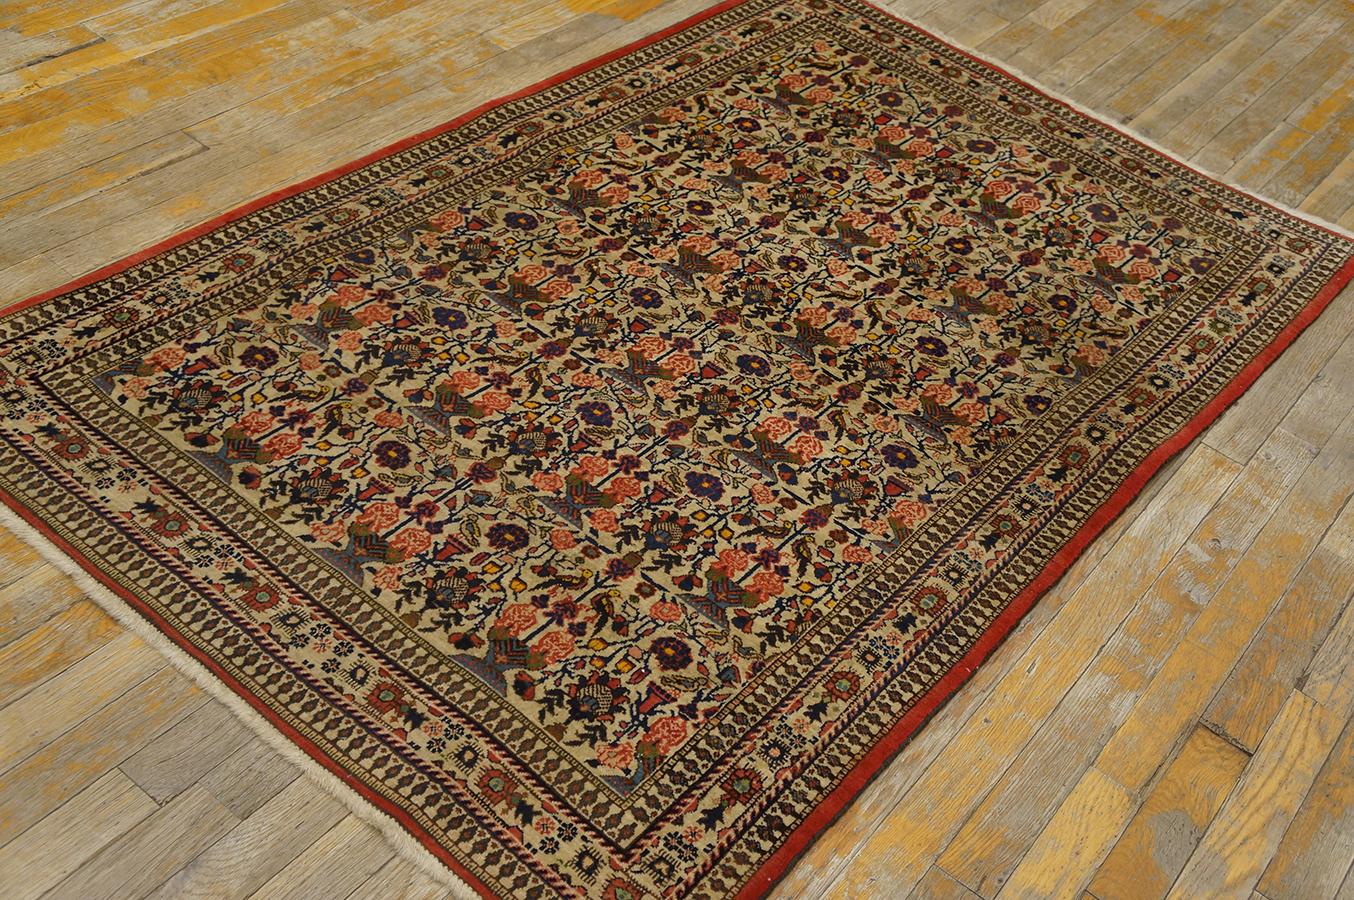 Antique Persian Qum rug, size: 3' 5'' x 5' 3''.